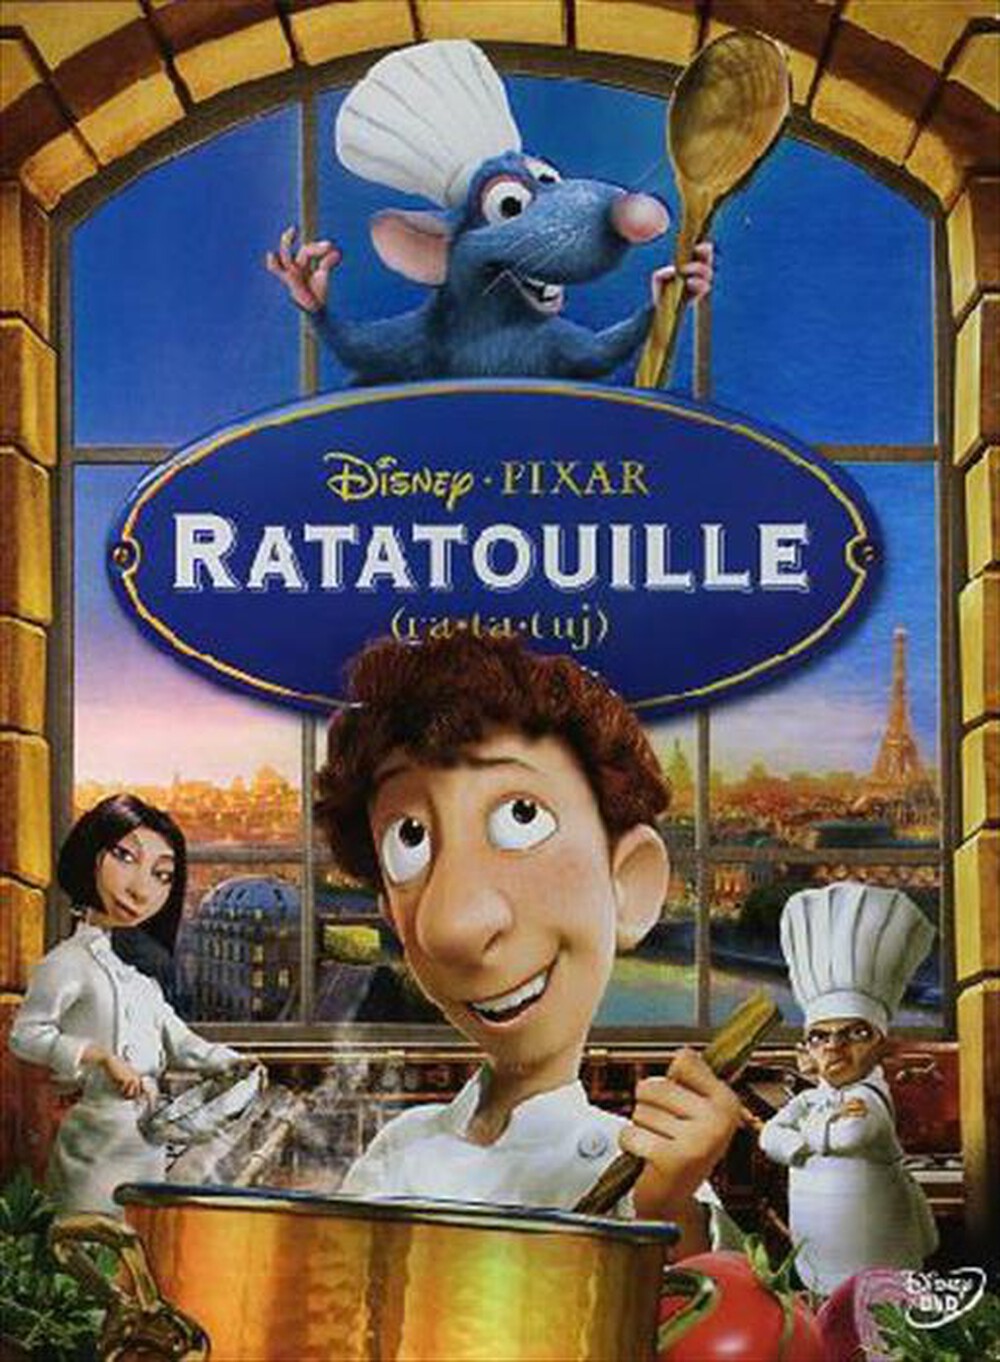 "WALT DISNEY - Ratatouille - "